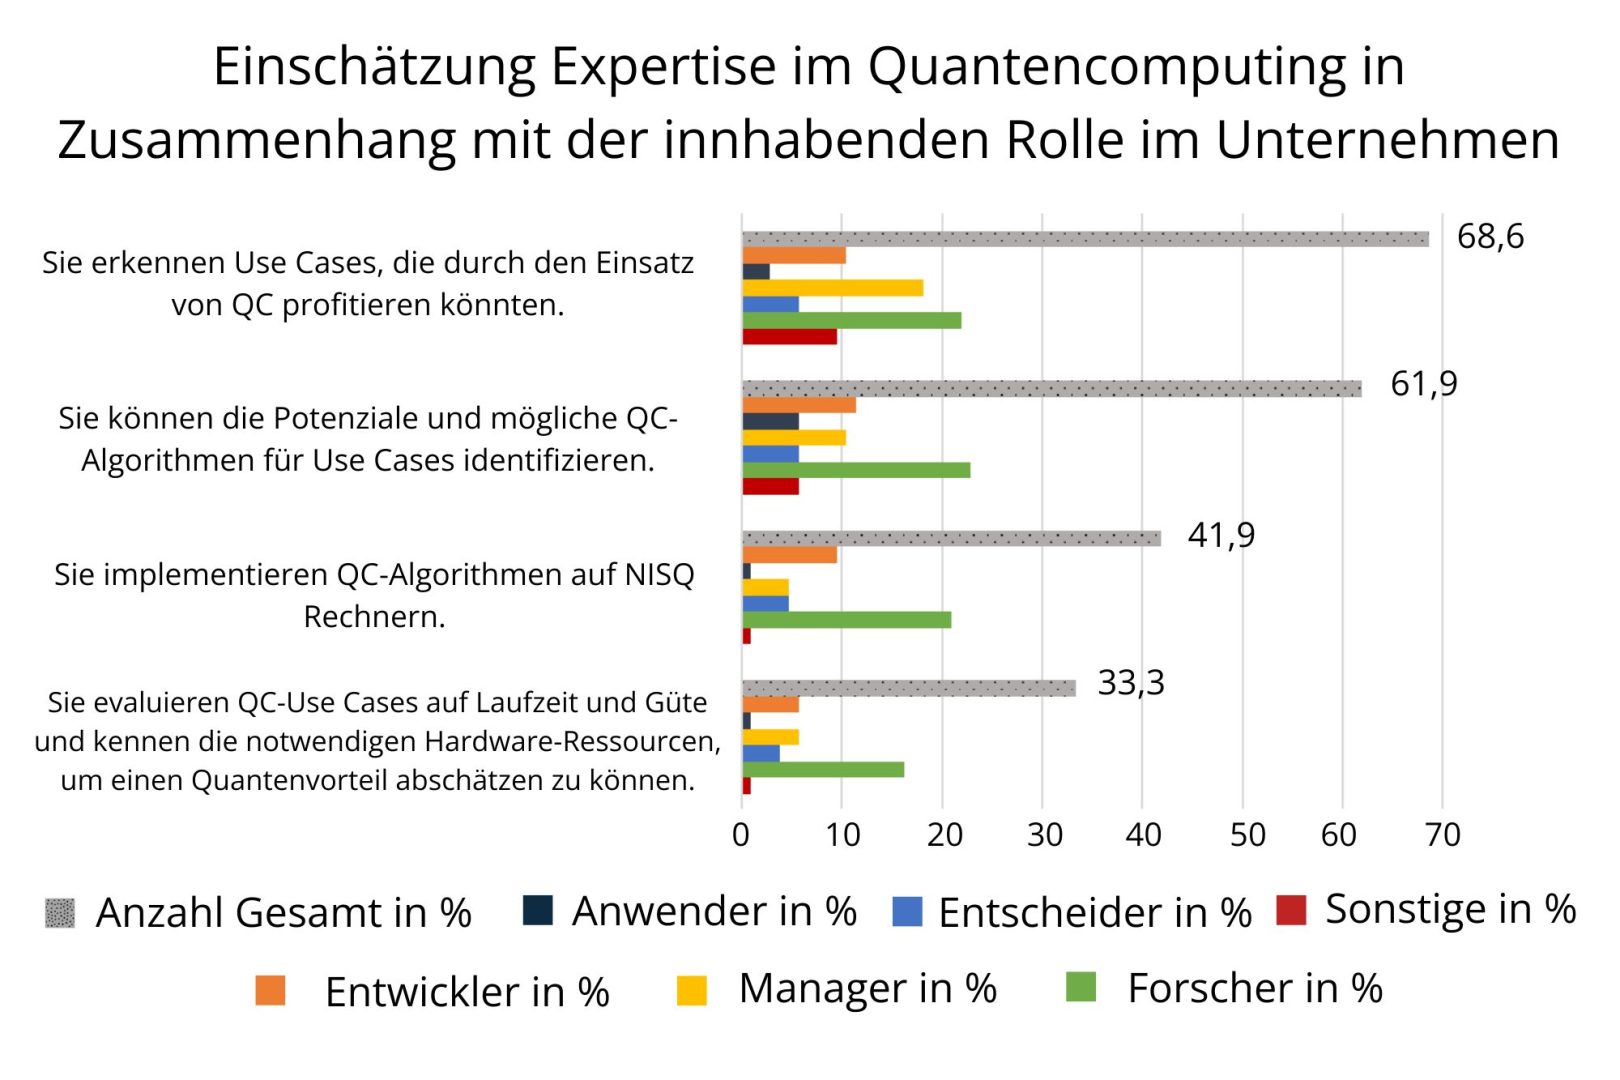 Einschätzung der Expertise im Quantencomputing in Zusammenhang mit der innehabenden Rolle im Unternehmen